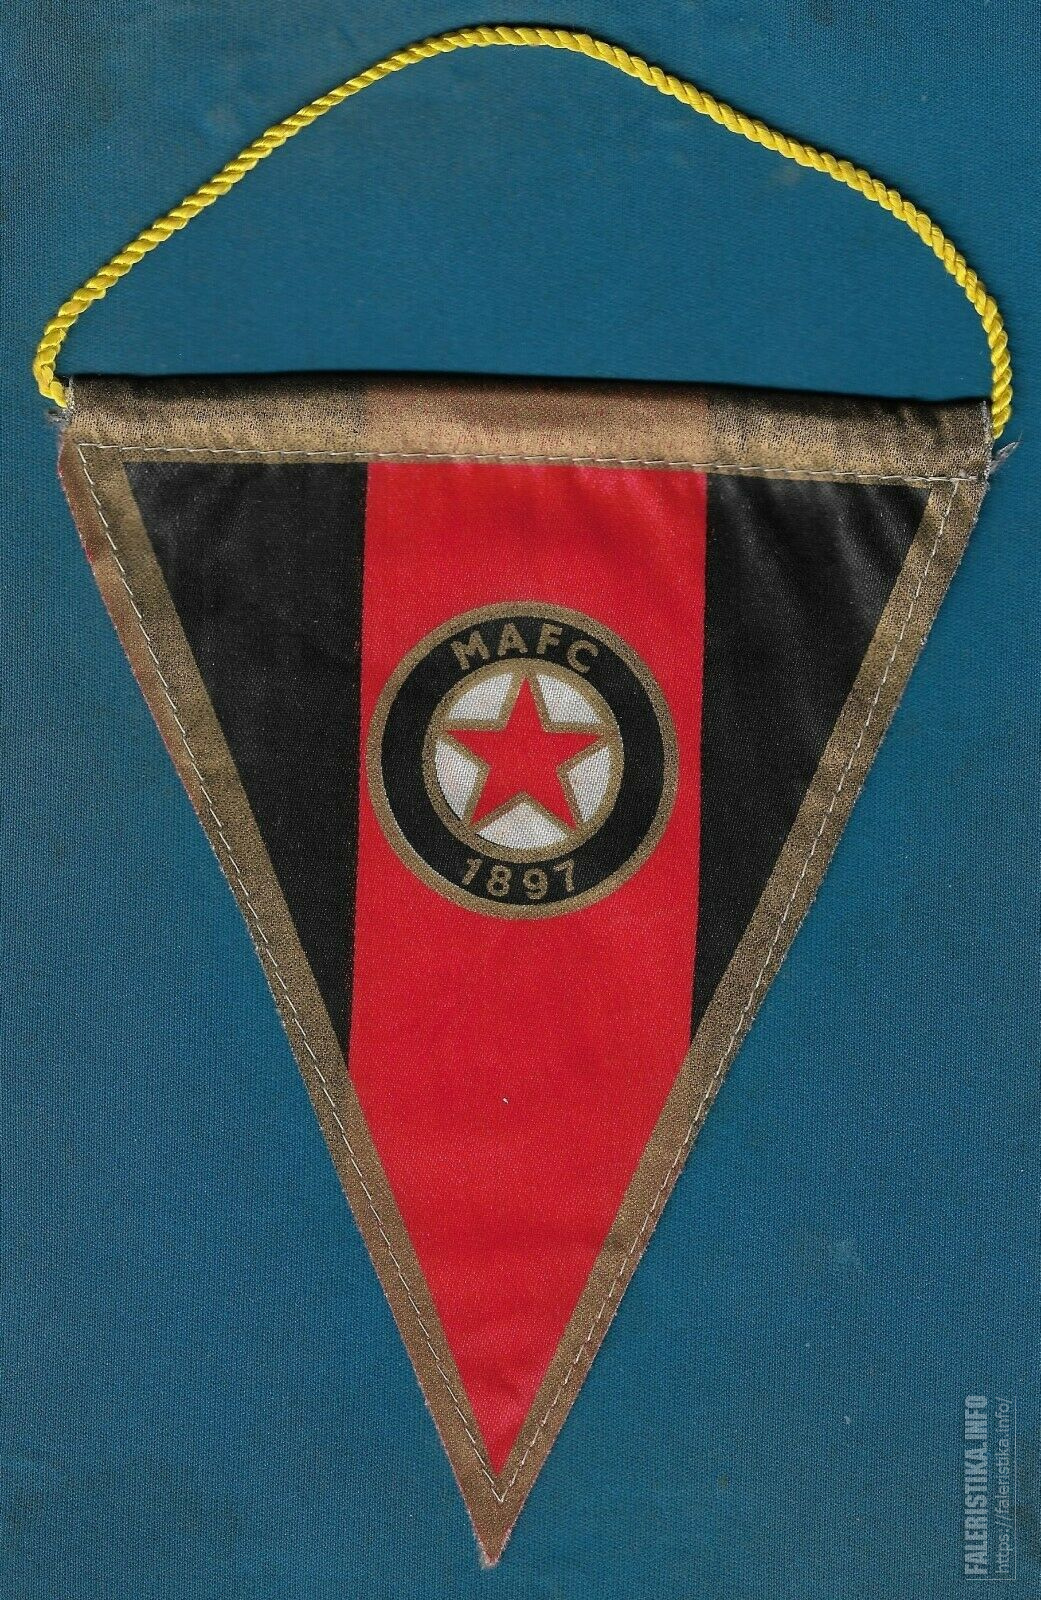 MAFC-1897-Hungary-football-club-vintage-pennant-flag.jpg